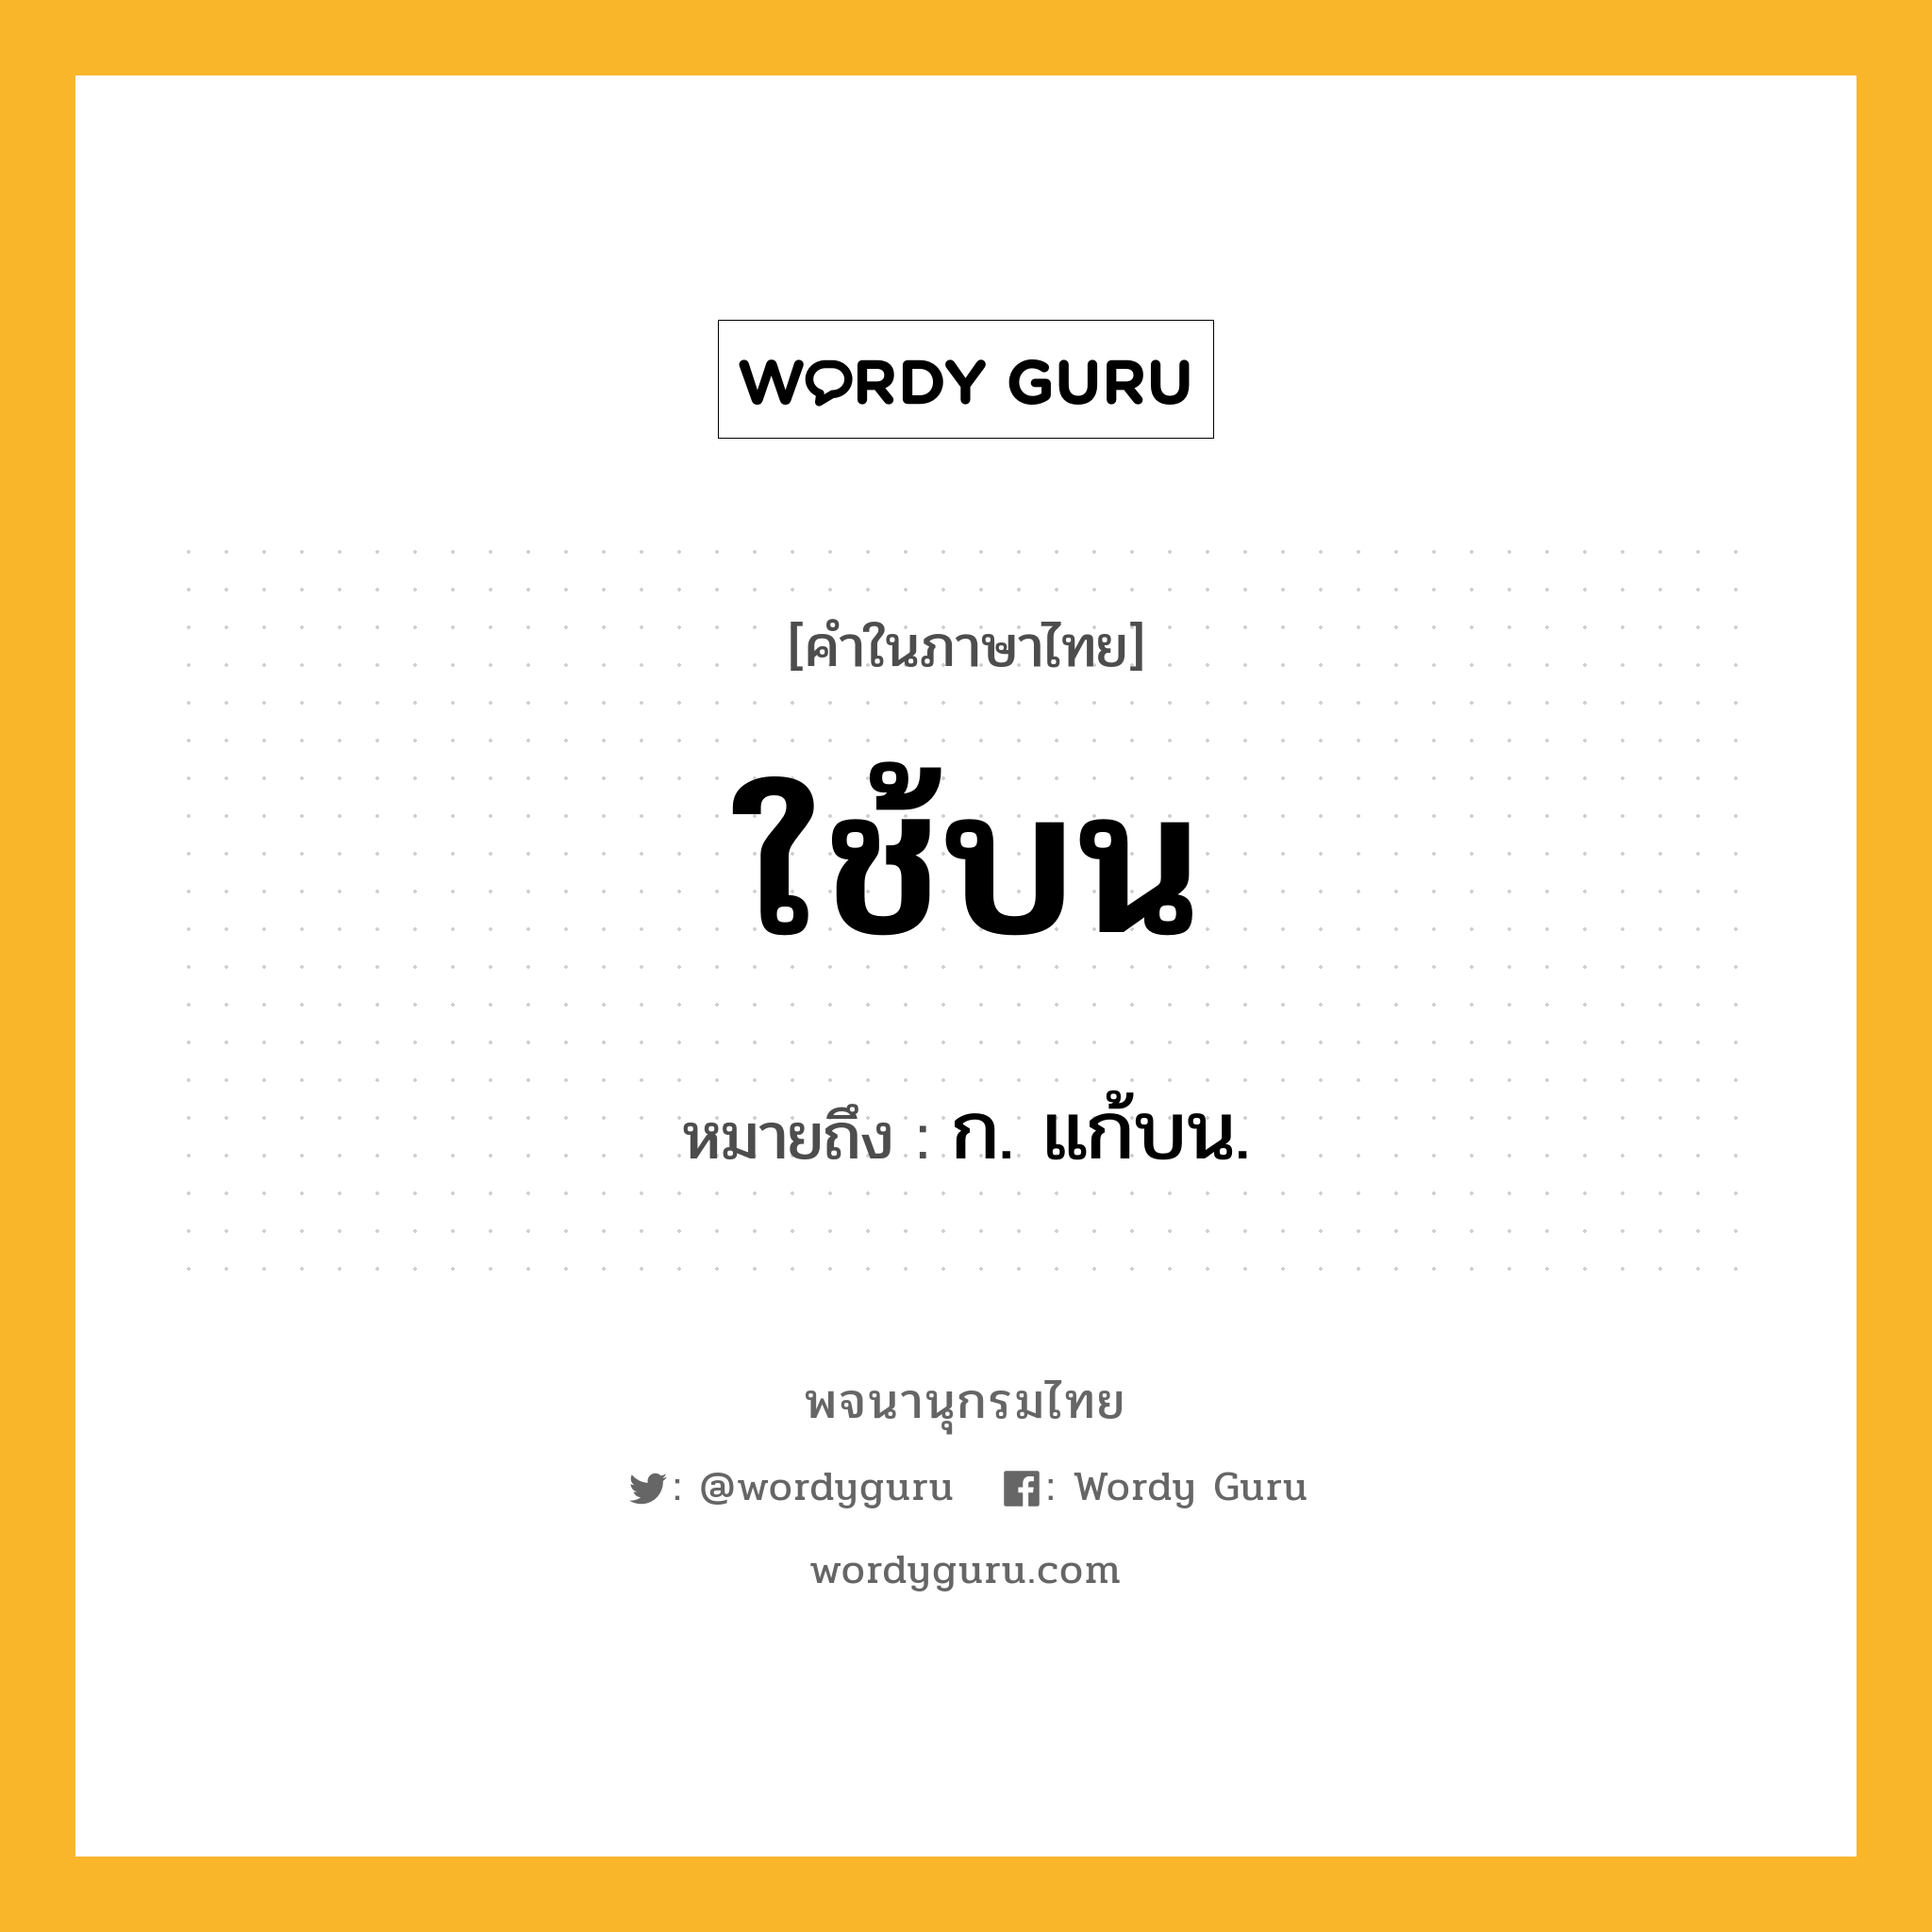 ใช้บน ความหมาย หมายถึงอะไร?, คำในภาษาไทย ใช้บน หมายถึง ก. แก้บน.